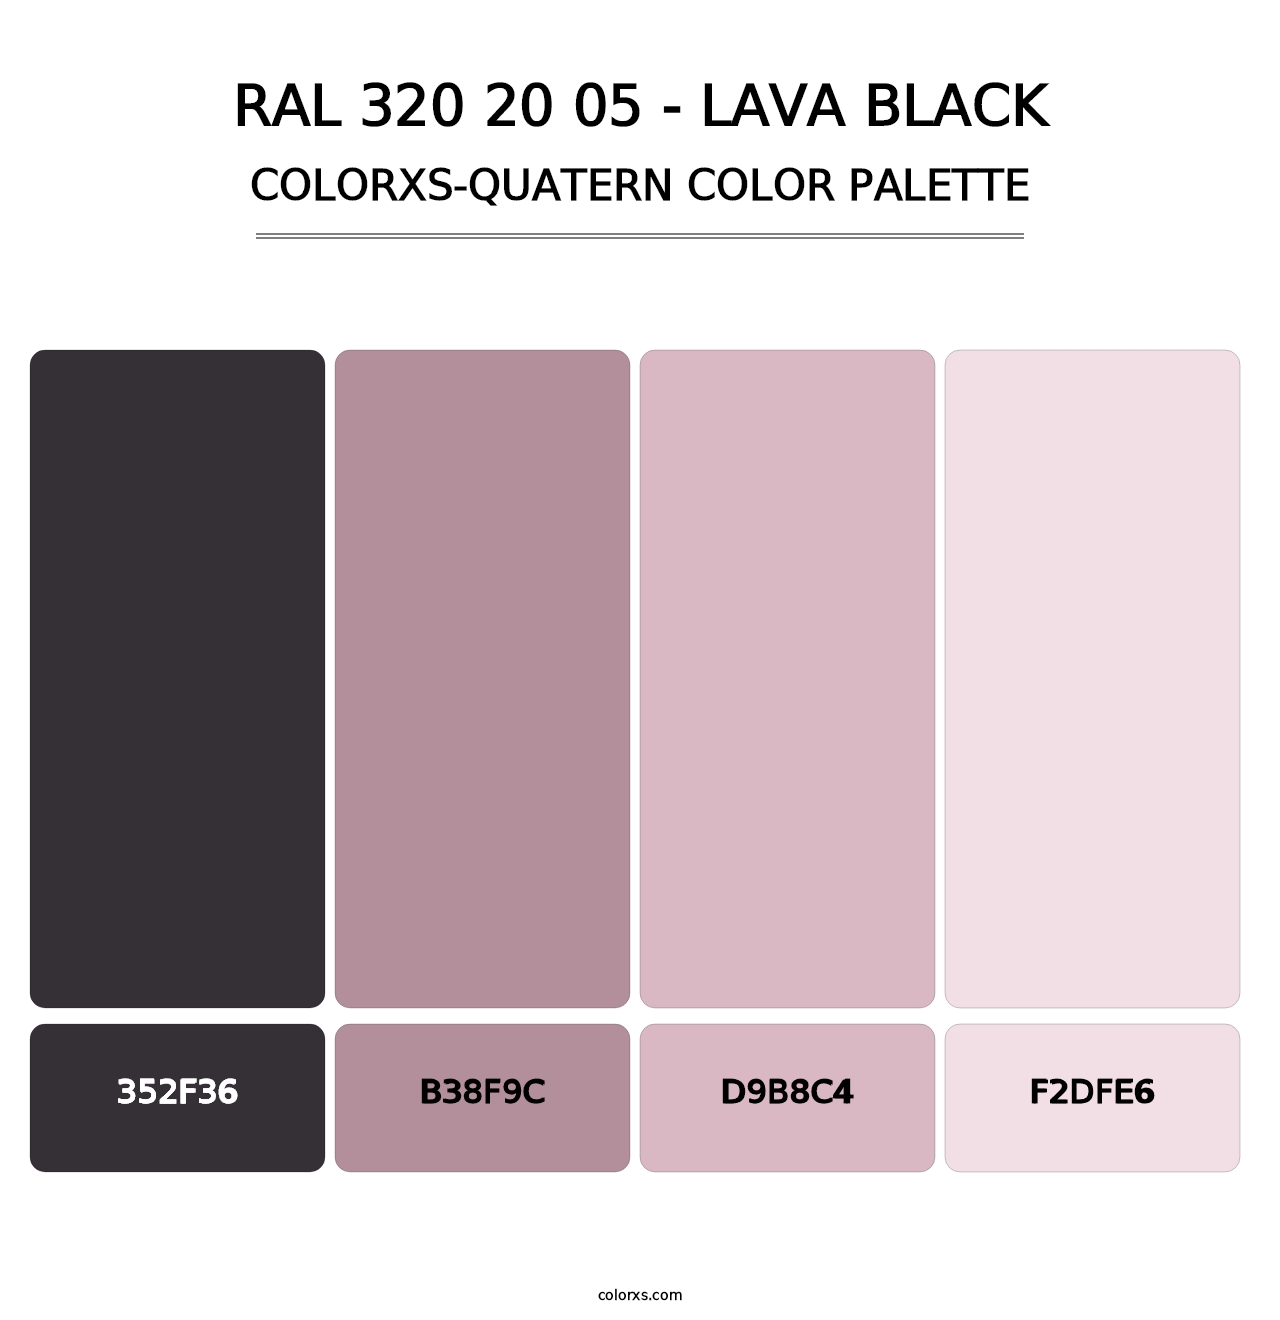 RAL 320 20 05 - Lava Black - Colorxs Quatern Palette